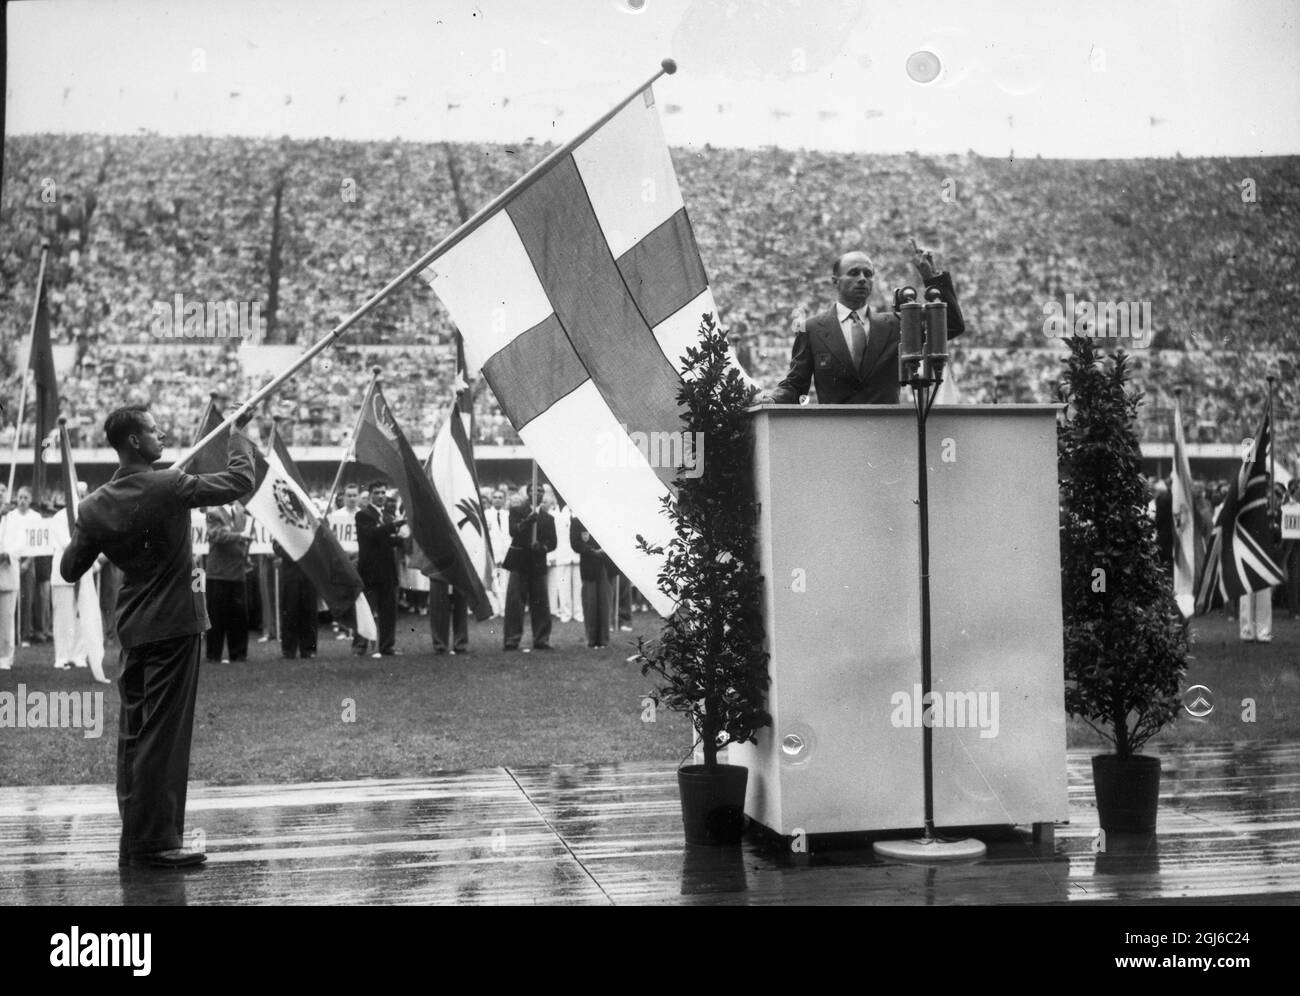 GIURAMENTO OLIMPICO - CERIMONIA DI PREMIAZIONE - LA RUSSIA NON riesce a far vacolare la LORO BANDIERA Helsinki : l'atleta finlandese, Neikki Savolainen , che presta giuramento accanto alla bandiera finlandese , durante la cerimonia di apertura dei Giochi Olimpici del 1952 qui. Nota la bandiera russa non è immersa ( vista a destra ) . 19 luglio 1952 Foto Stock